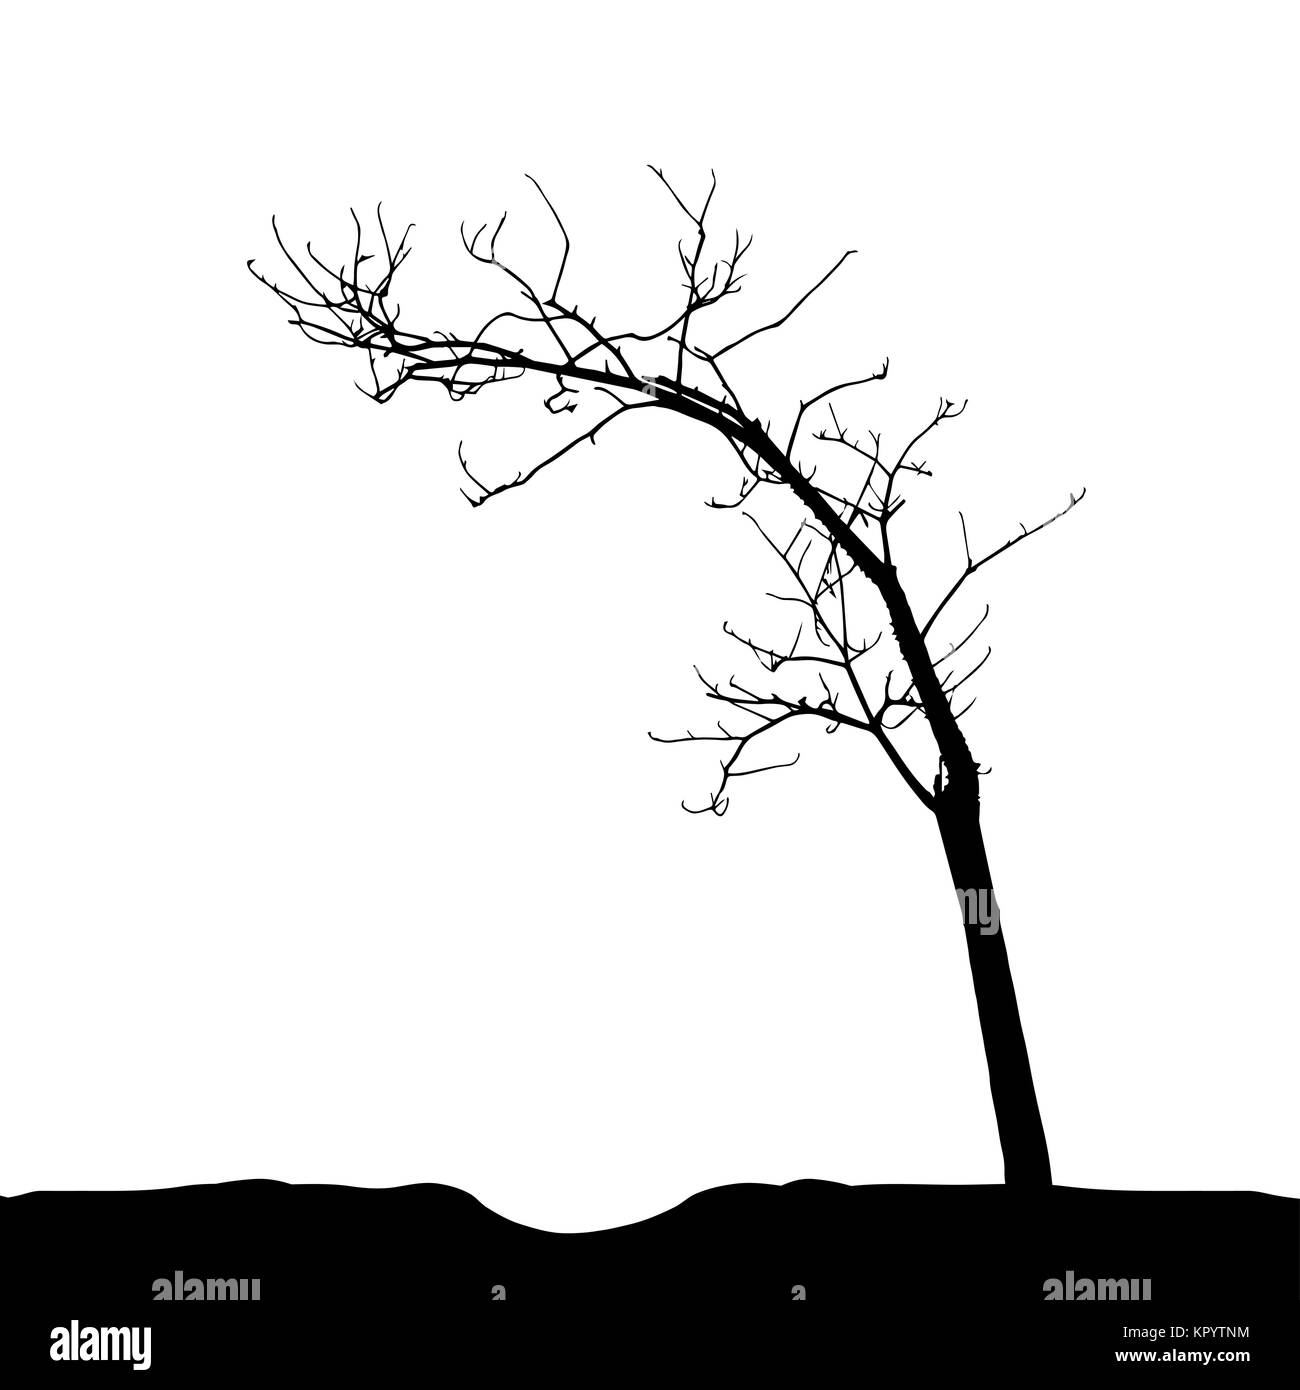 Baum-Silhouette isoliert auf weißem Migrationshintergrund. Vecrtor Illustrati Stock Vektor